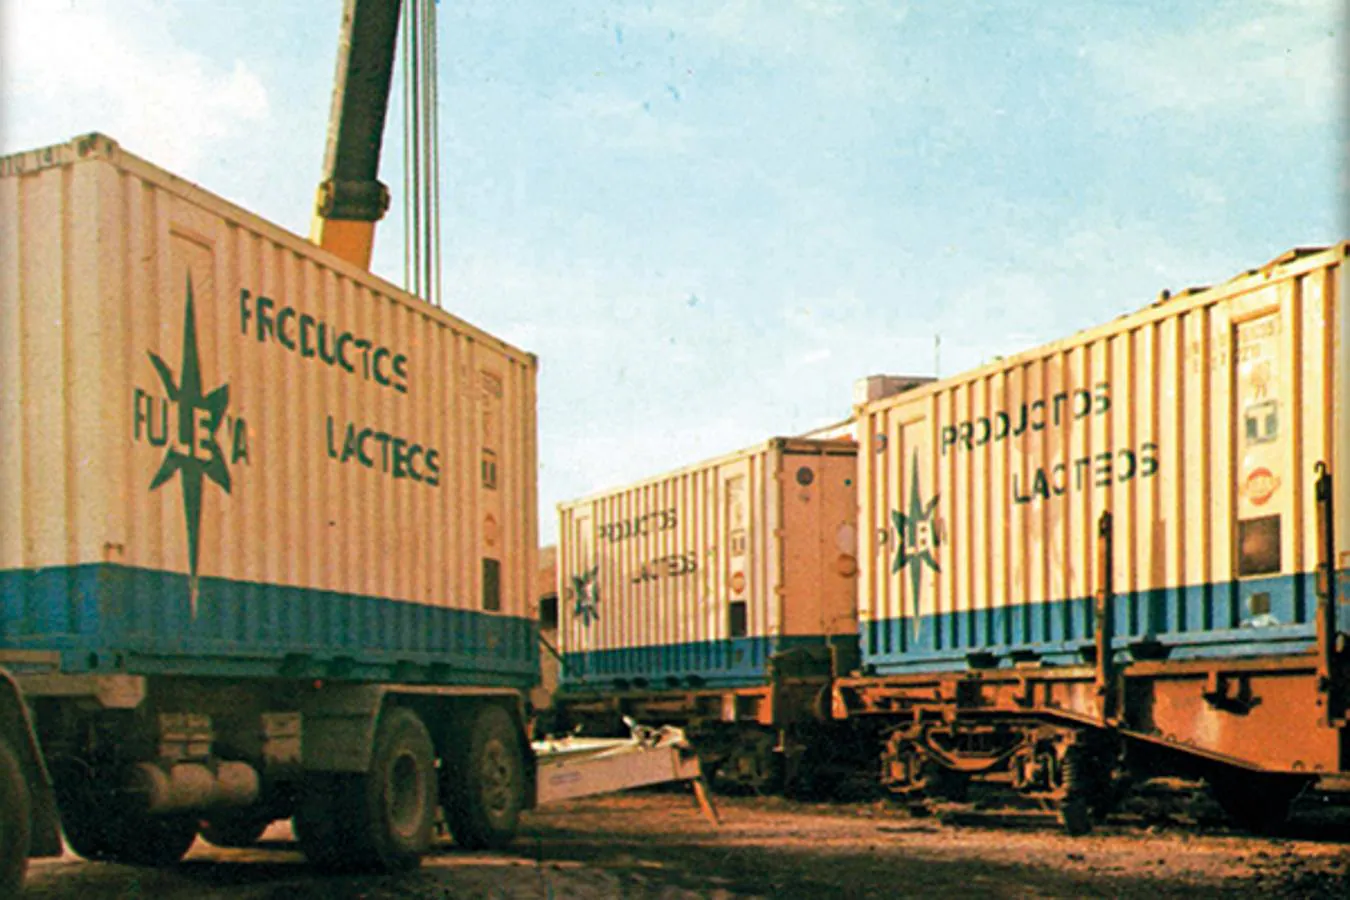 1984. 'EL TREN DE LA LECHE'. Un camión trasvasa contenedores refrigerados en la estación de ferrocarril de Granada. Procedían del “tren de la leche” que llegaba a diario desde Galicia.